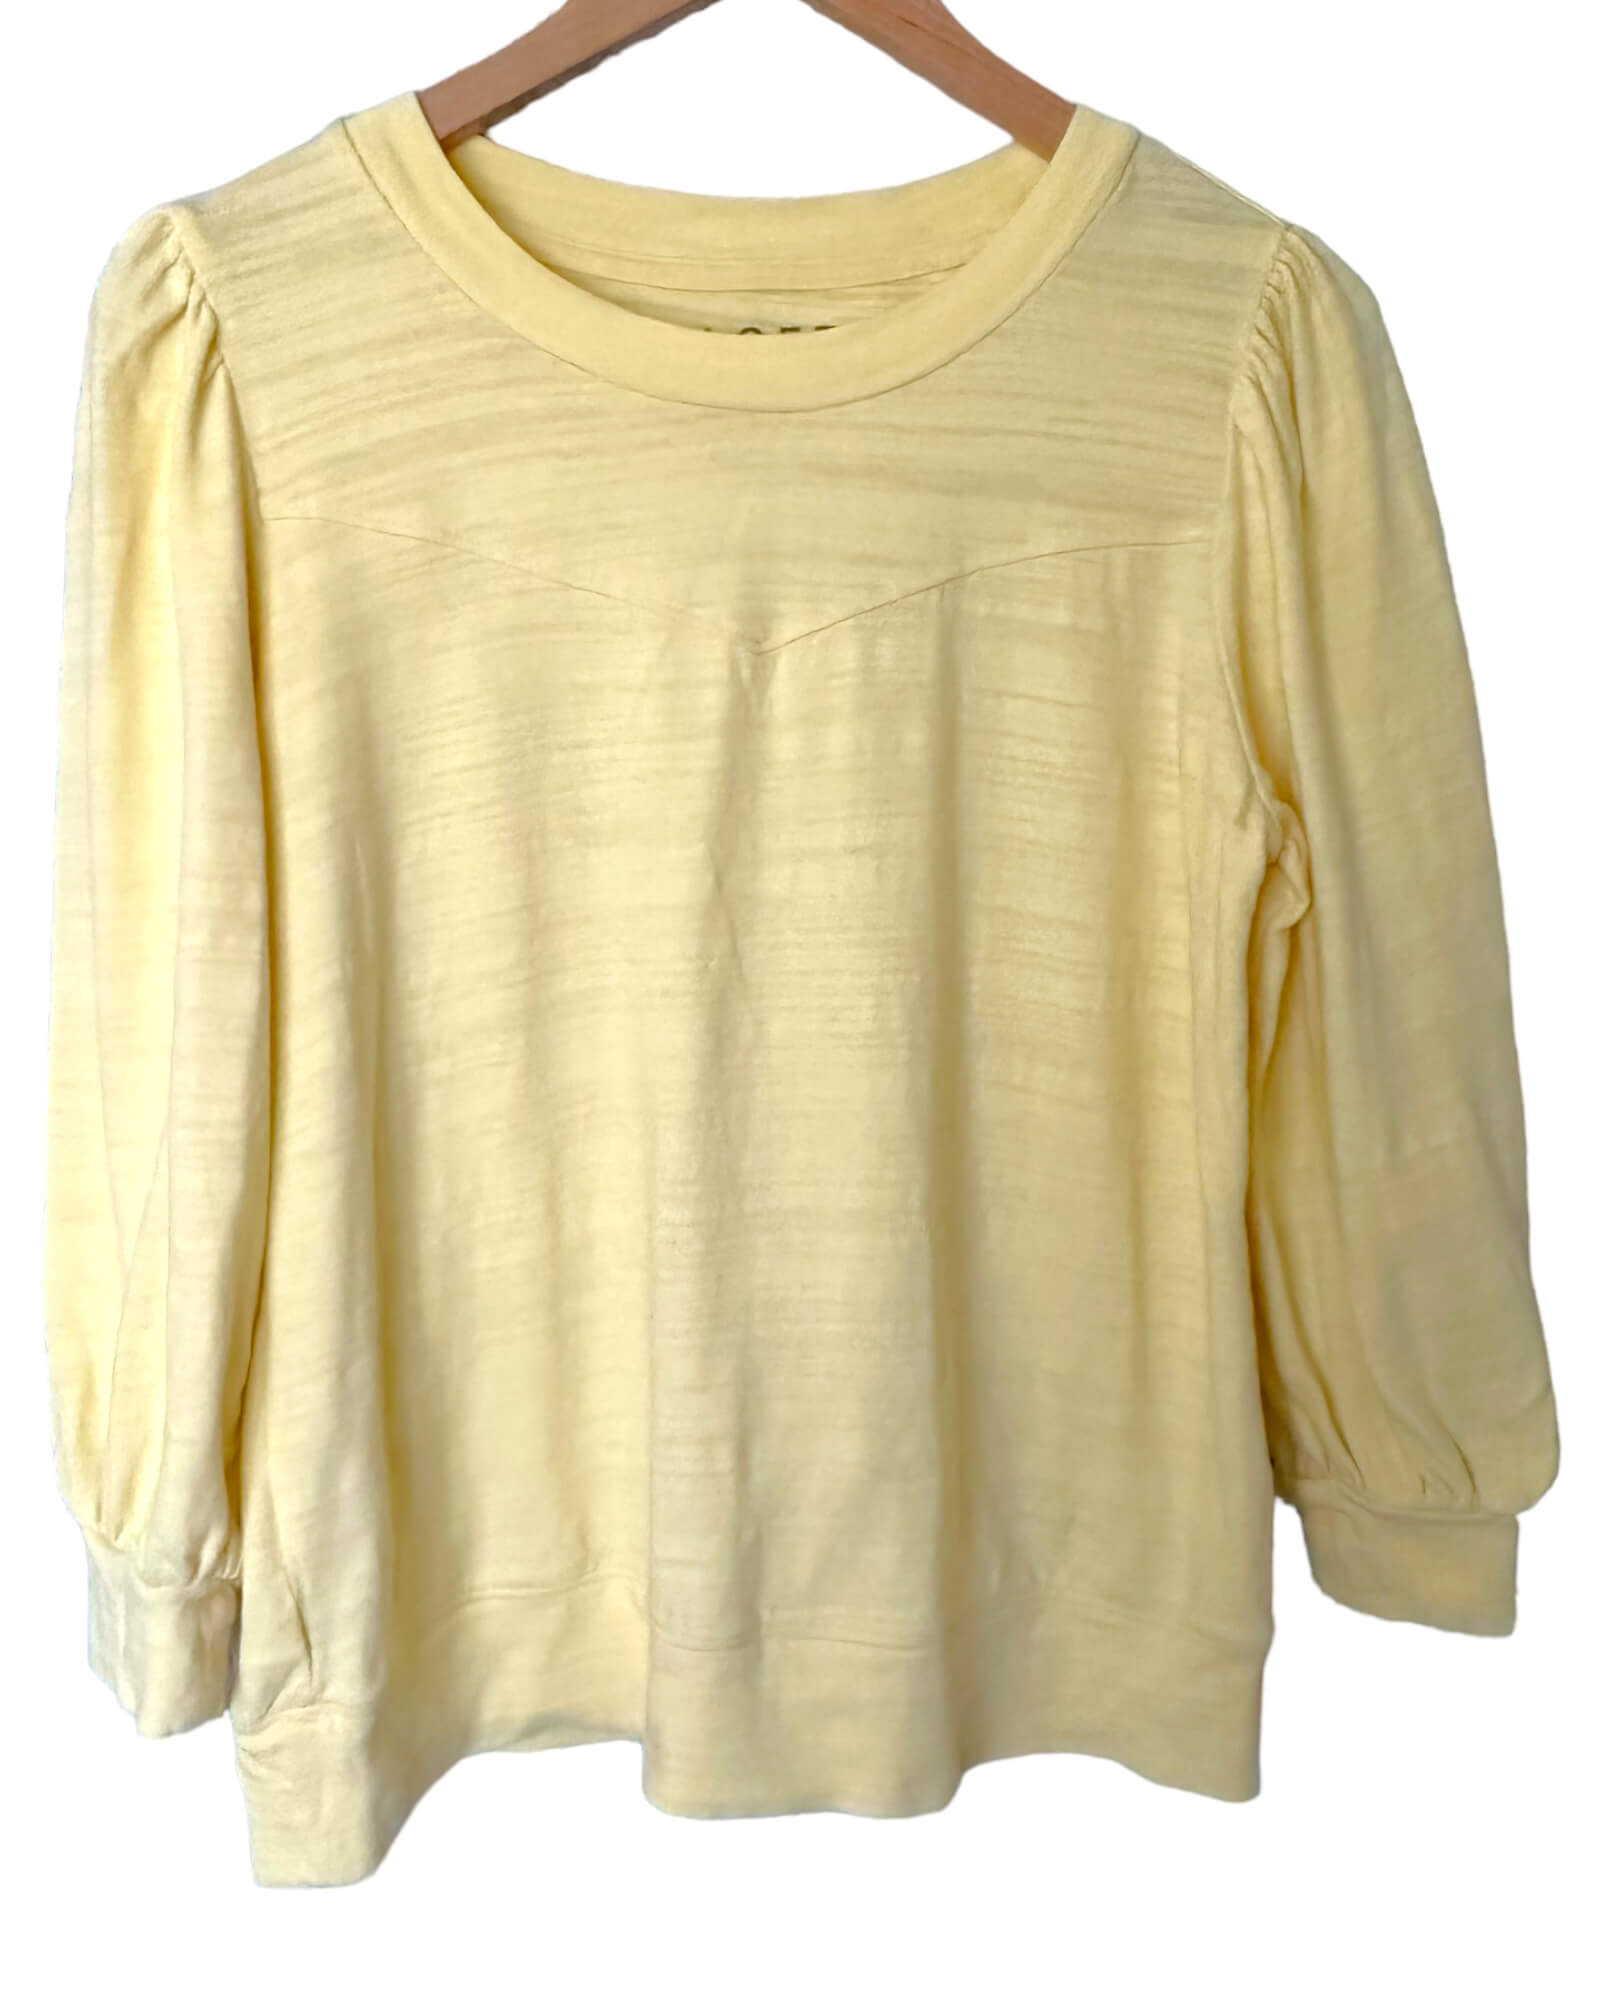 Light Summer LOFT buttercup yellow puff shoulder knit top